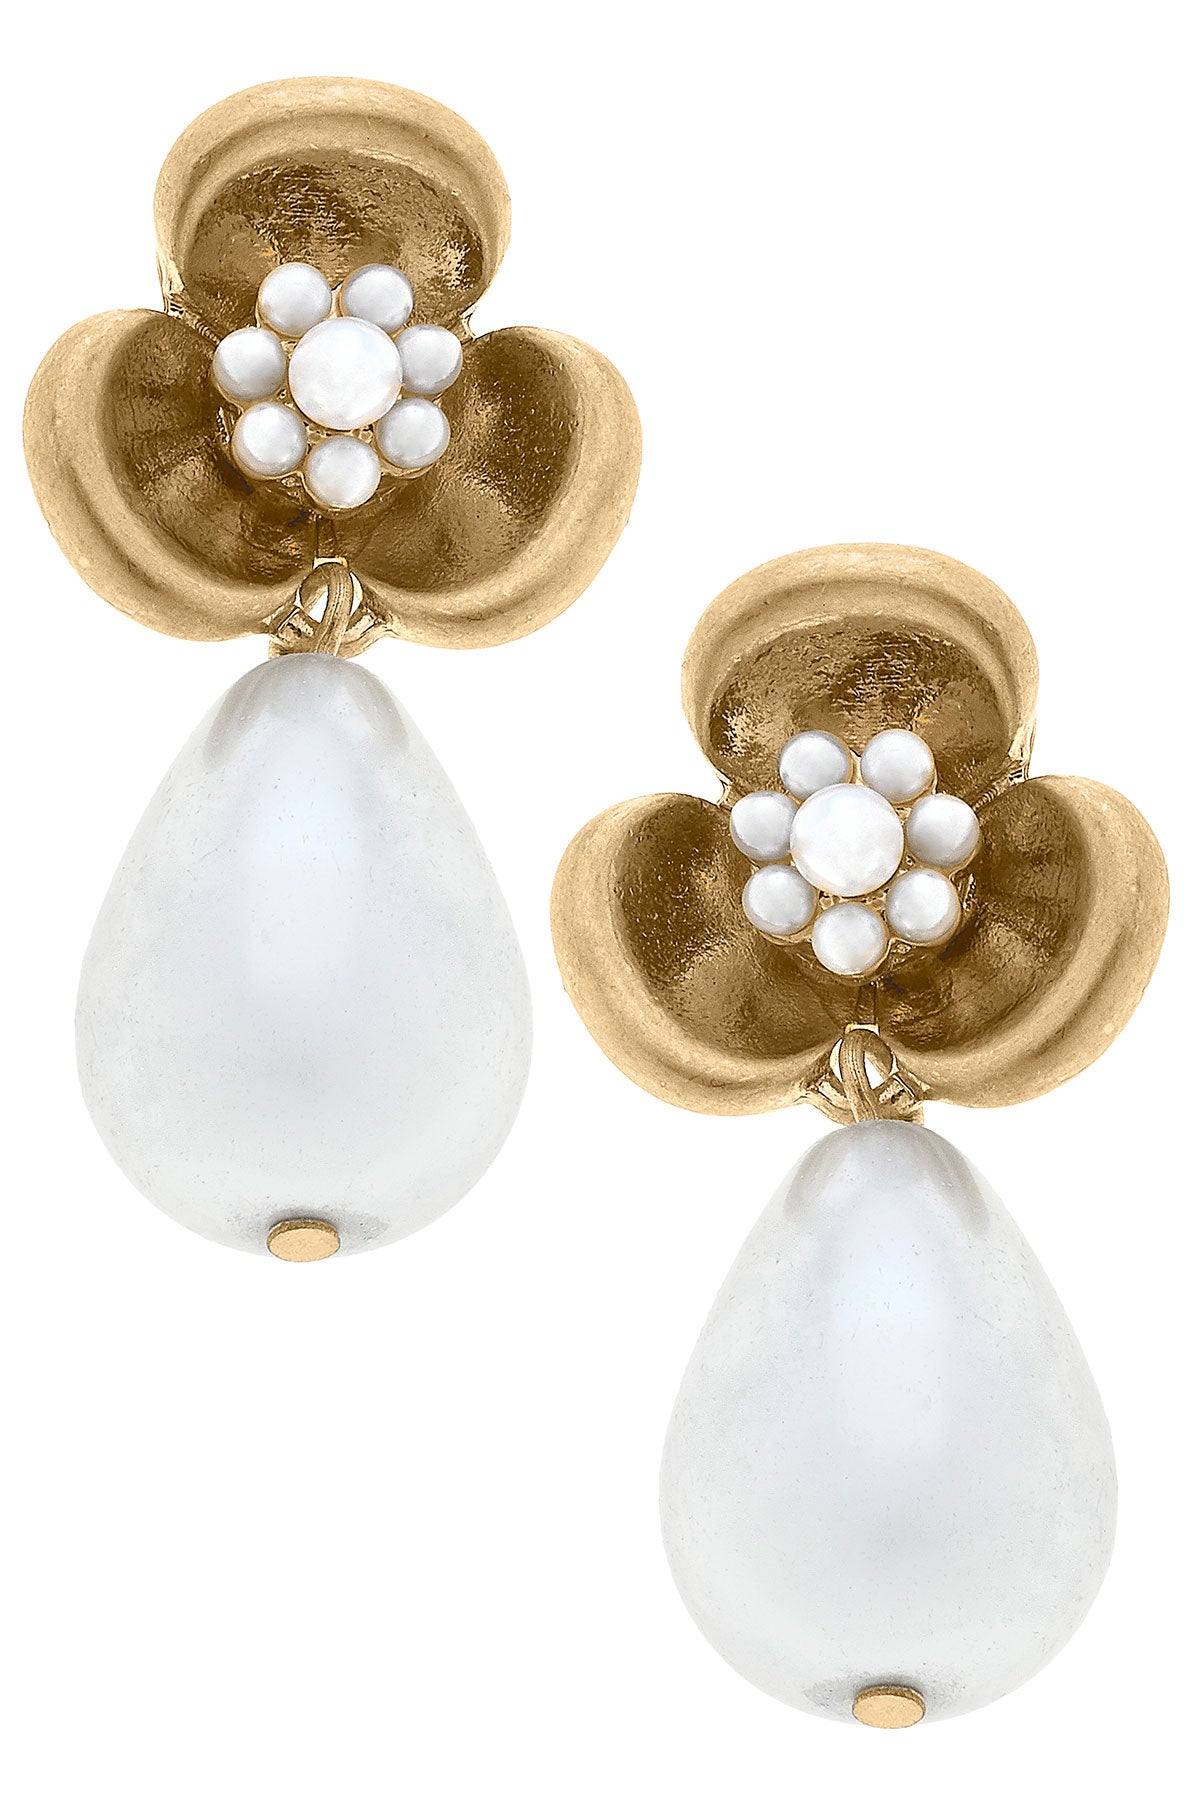 Jeanie Flower with Pearl Drop Earrings in Worn Gold